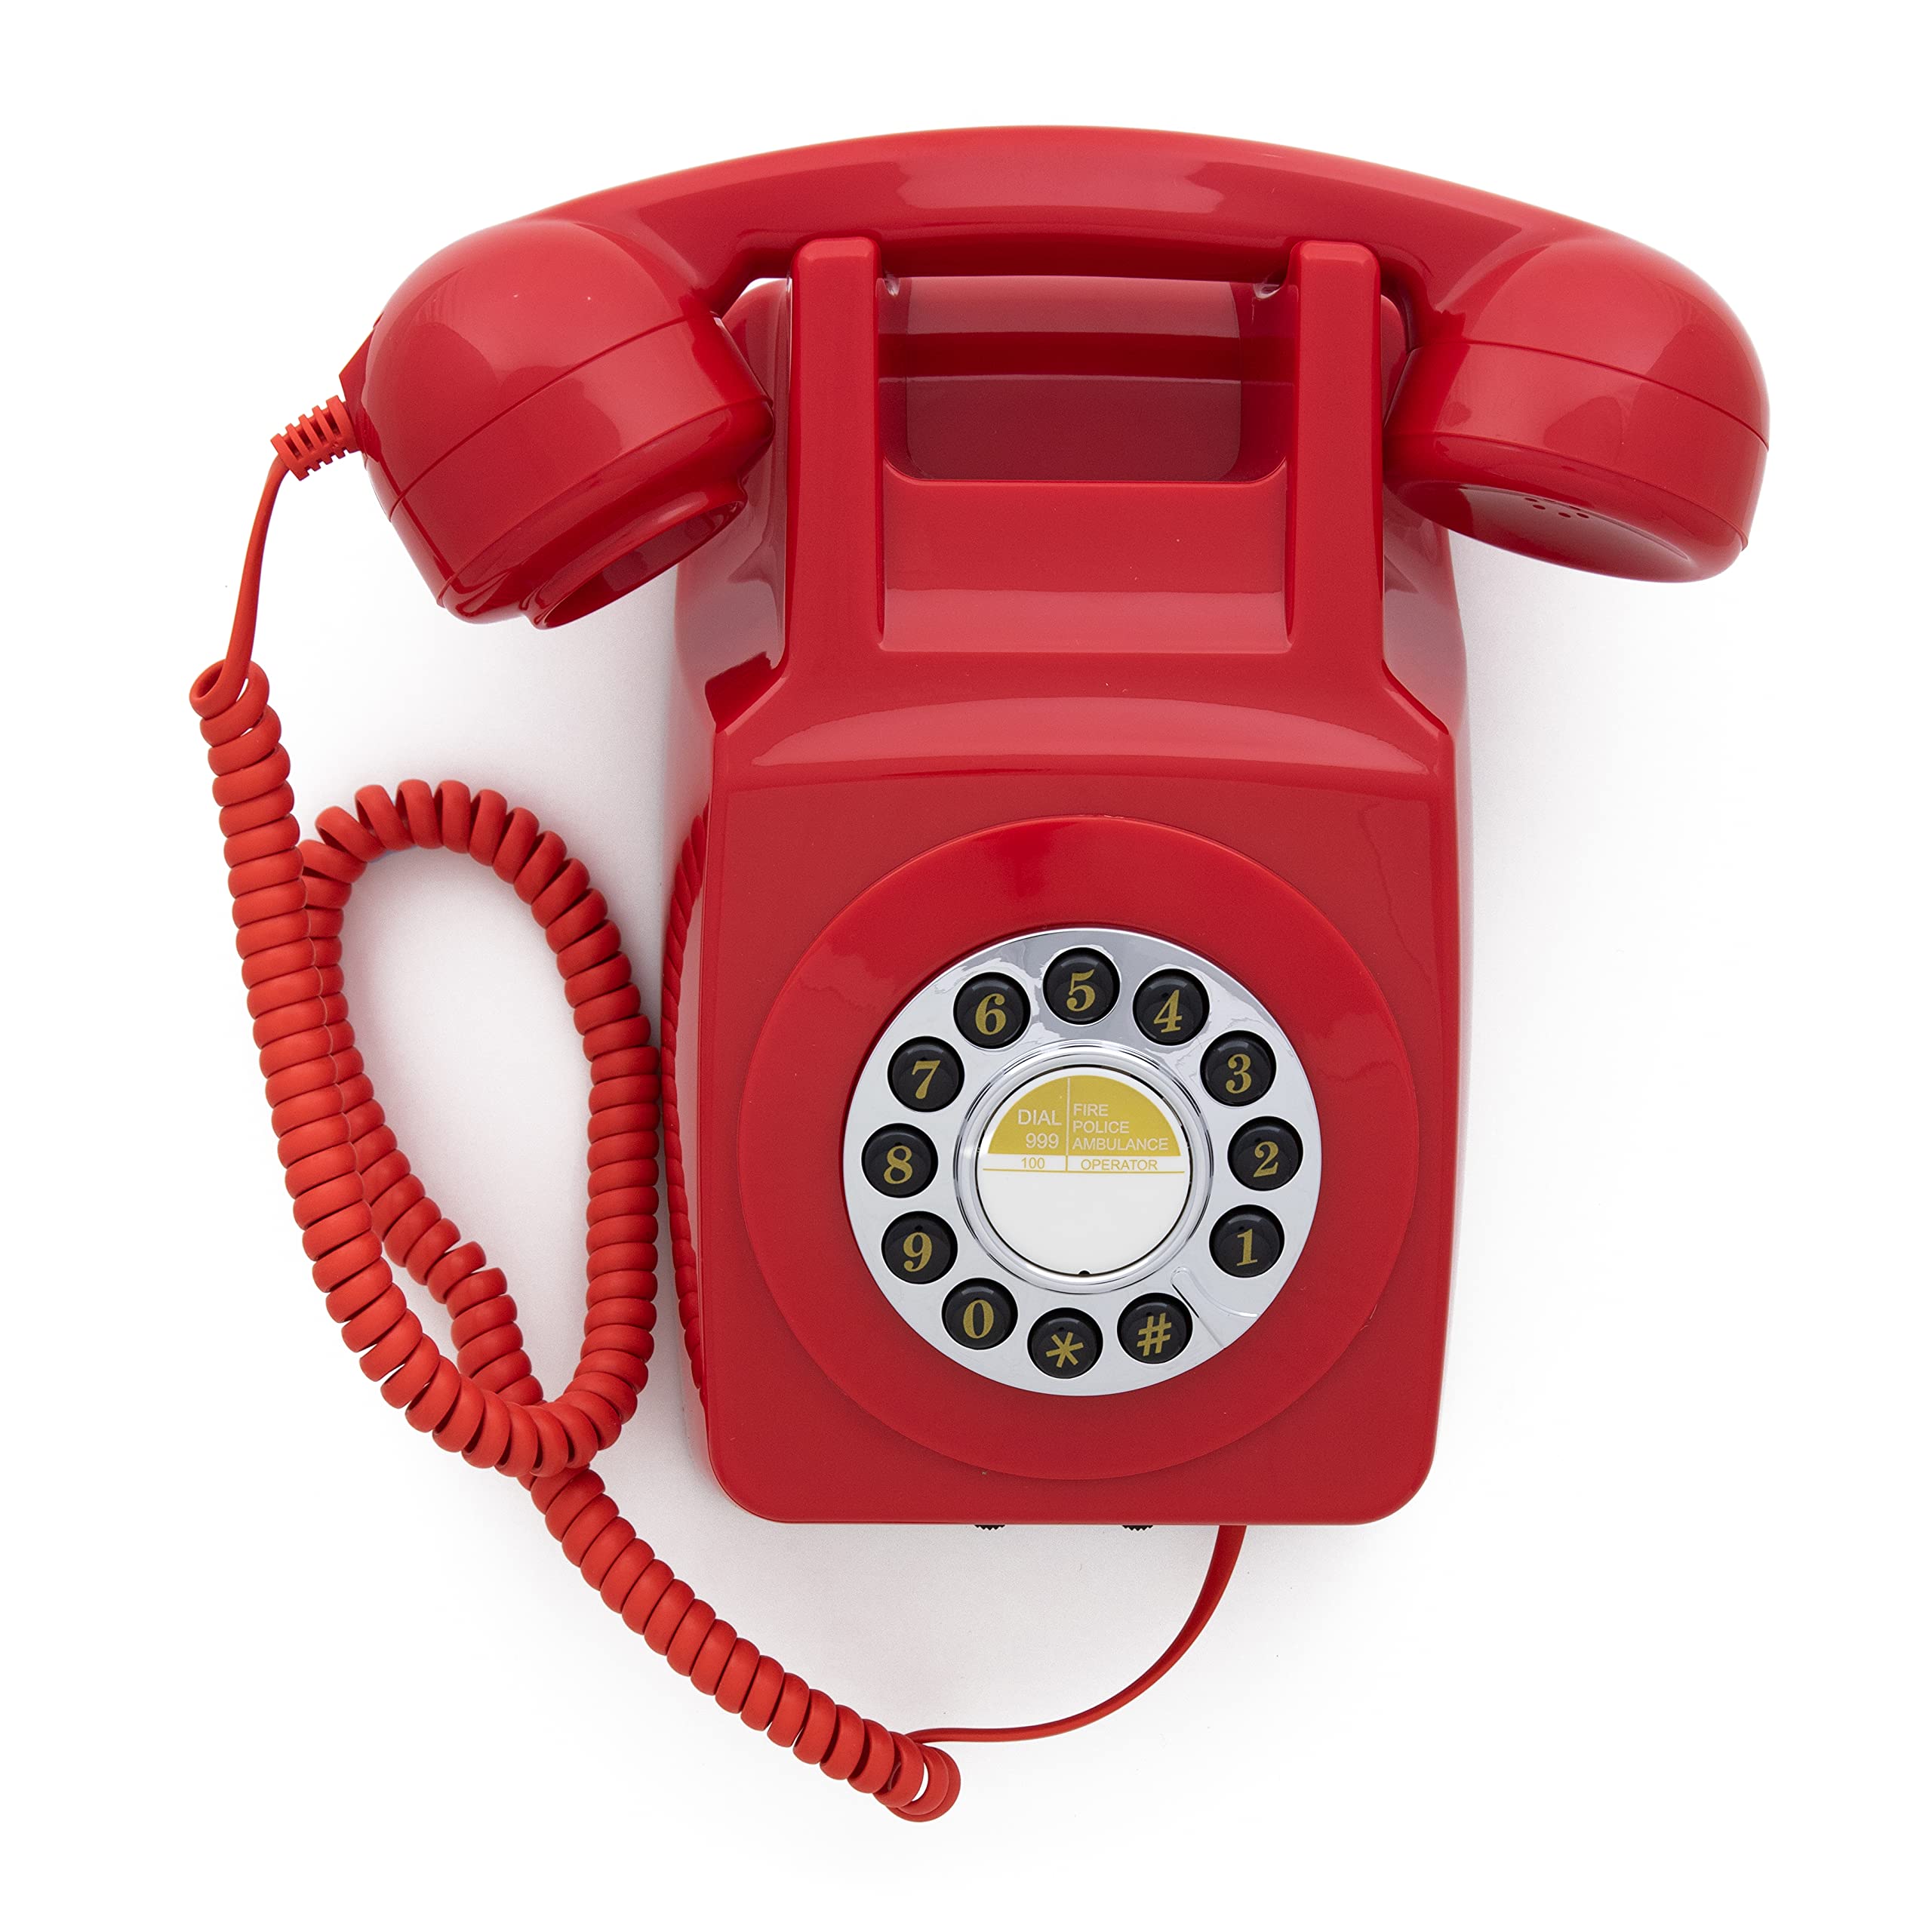 GPO 746WALL Retro Festznetztelefon mit Drucktasten zur Wandmontage mit authentischer Klingelton, Rot